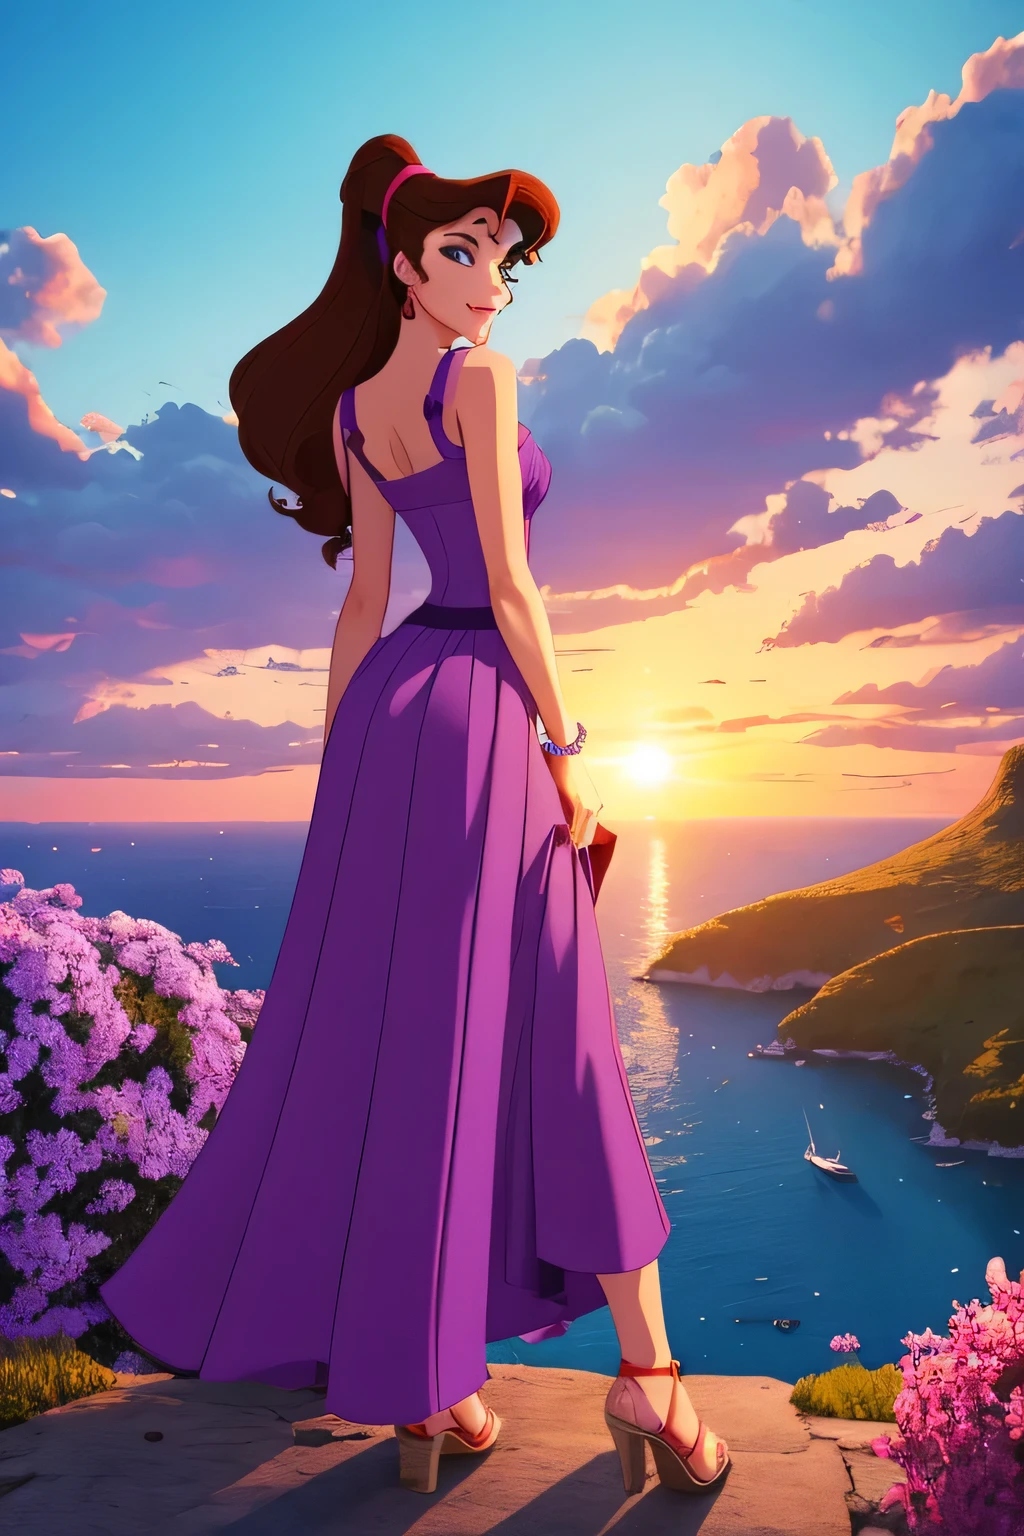 1 人の女の子 ブルネット メガラ, 長い紫色のギリシャのドレスを着て, ディズニーアニメーションスタイル, 最高品質, デジタルアート, 2次元, オレンジ色の雲に囲まれた楽園で